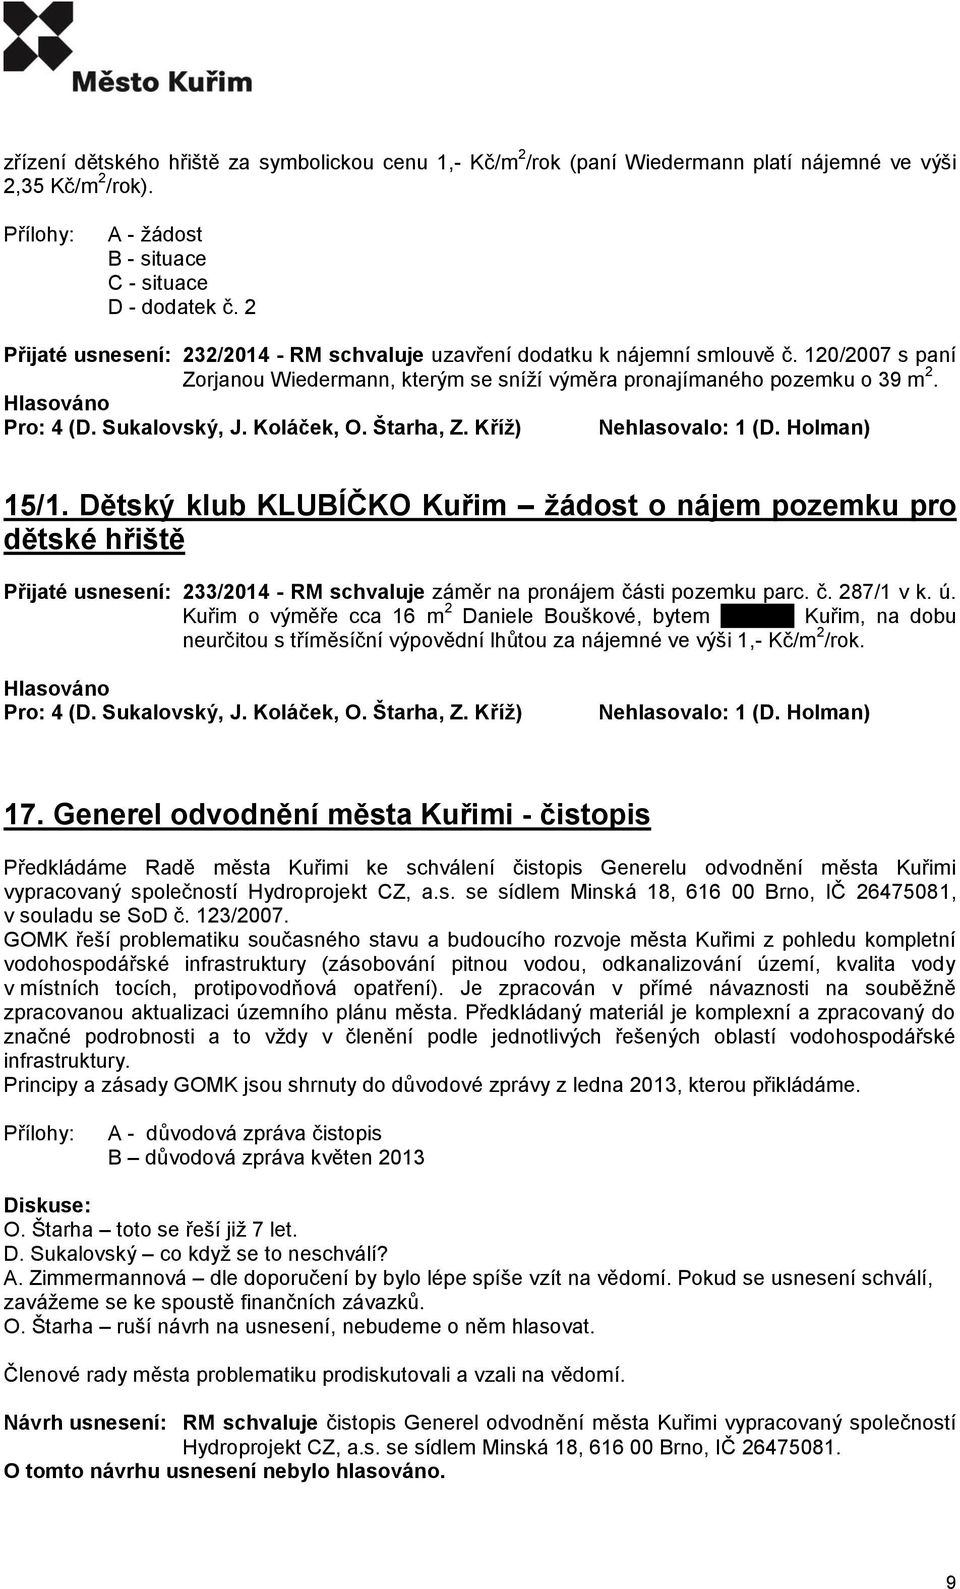 Dětský klub KLUBÍČKO Kuřim žádost o nájem pozemku pro dětské hřiště Přijaté usnesení: 233/2014 - RM schvaluje záměr na pronájem části pozemku parc. č. 287/1 v k. ú.